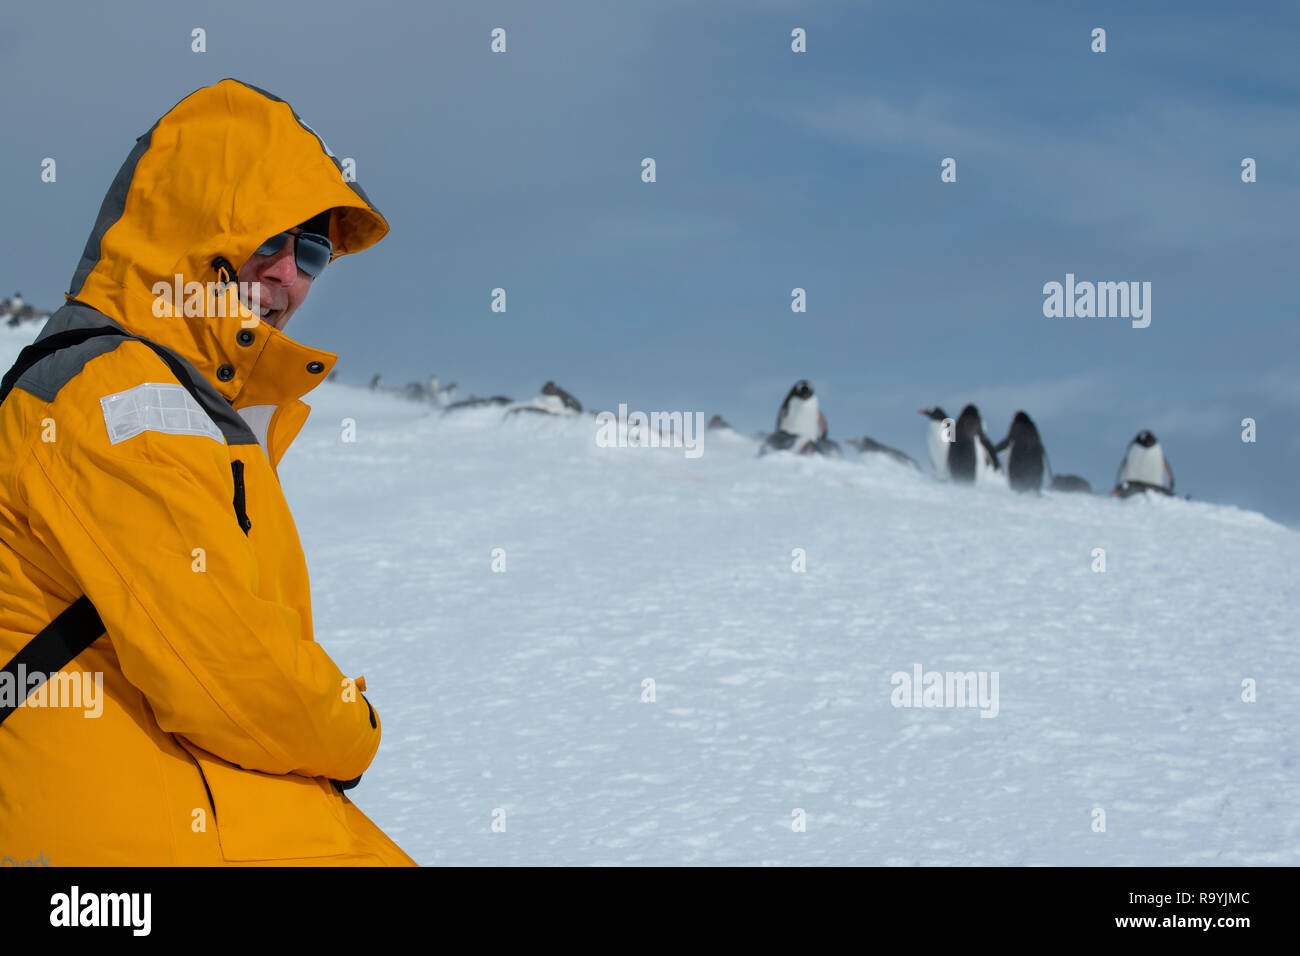 Antarktis, gerlache Strait, Palmer Archipel, Wiencke Island, Damoy Punkt. Adventure Tourist mit Gentoo Penguins. Stockfoto